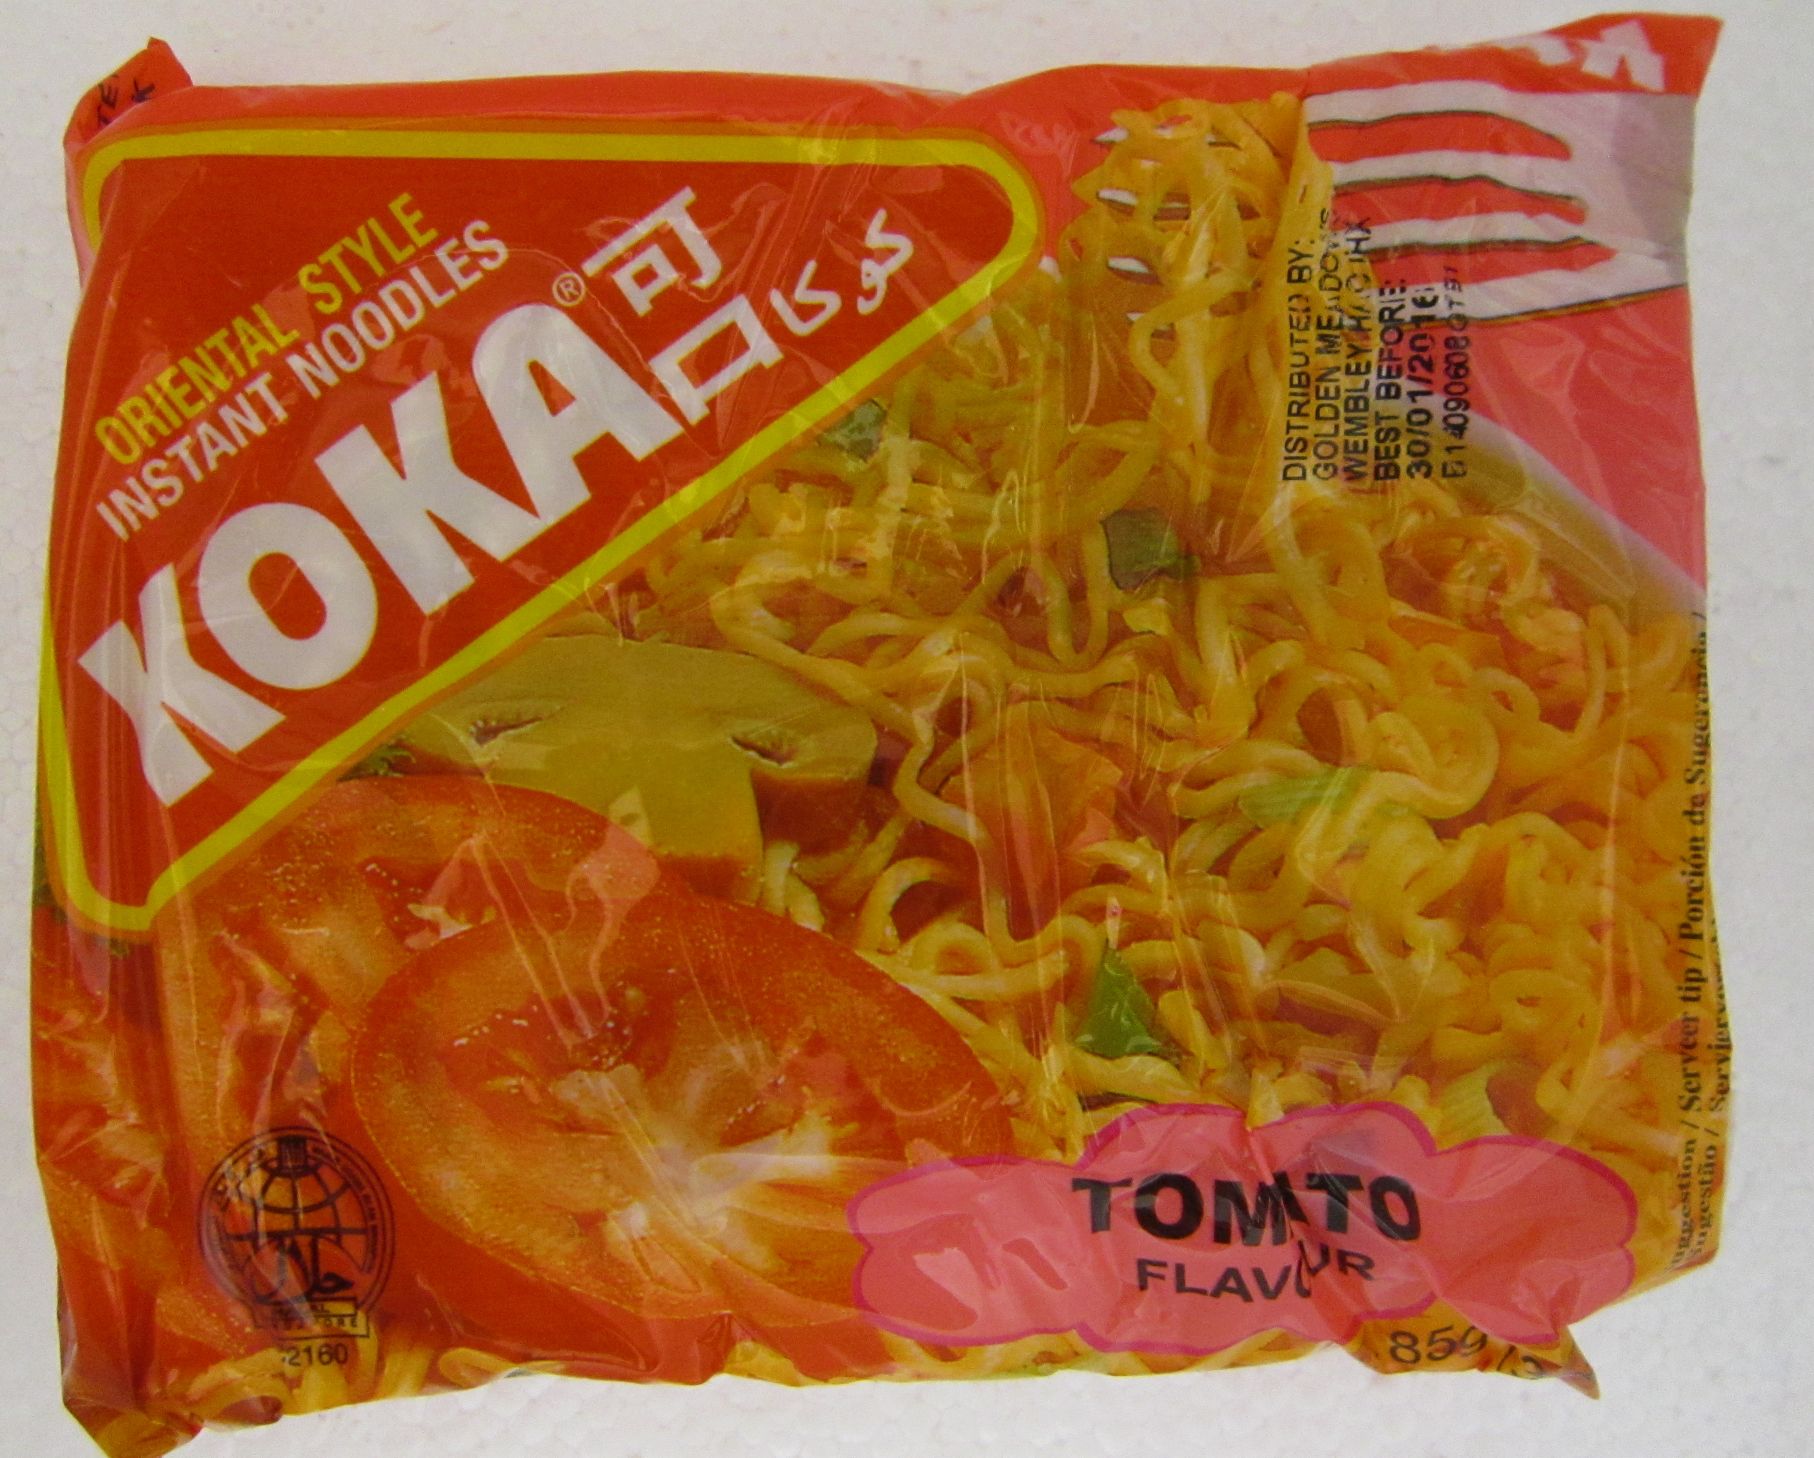 Koka Instant Noodles Tomato Flavour Image